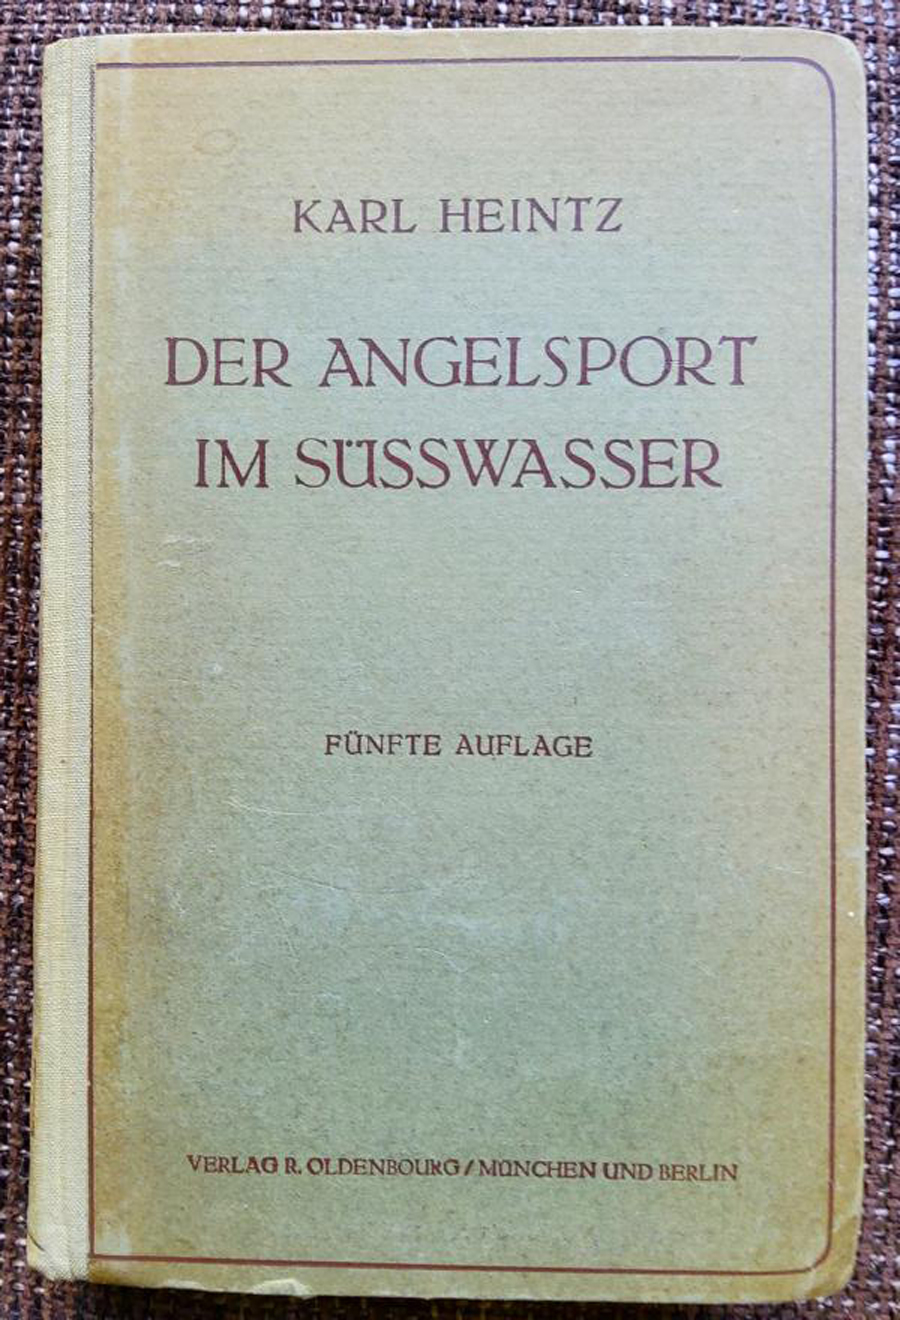 Heintz schenkte seinem englischen Freund die fünfte, neu überarbeitete Auflage seines Angelsport-Klassikers.